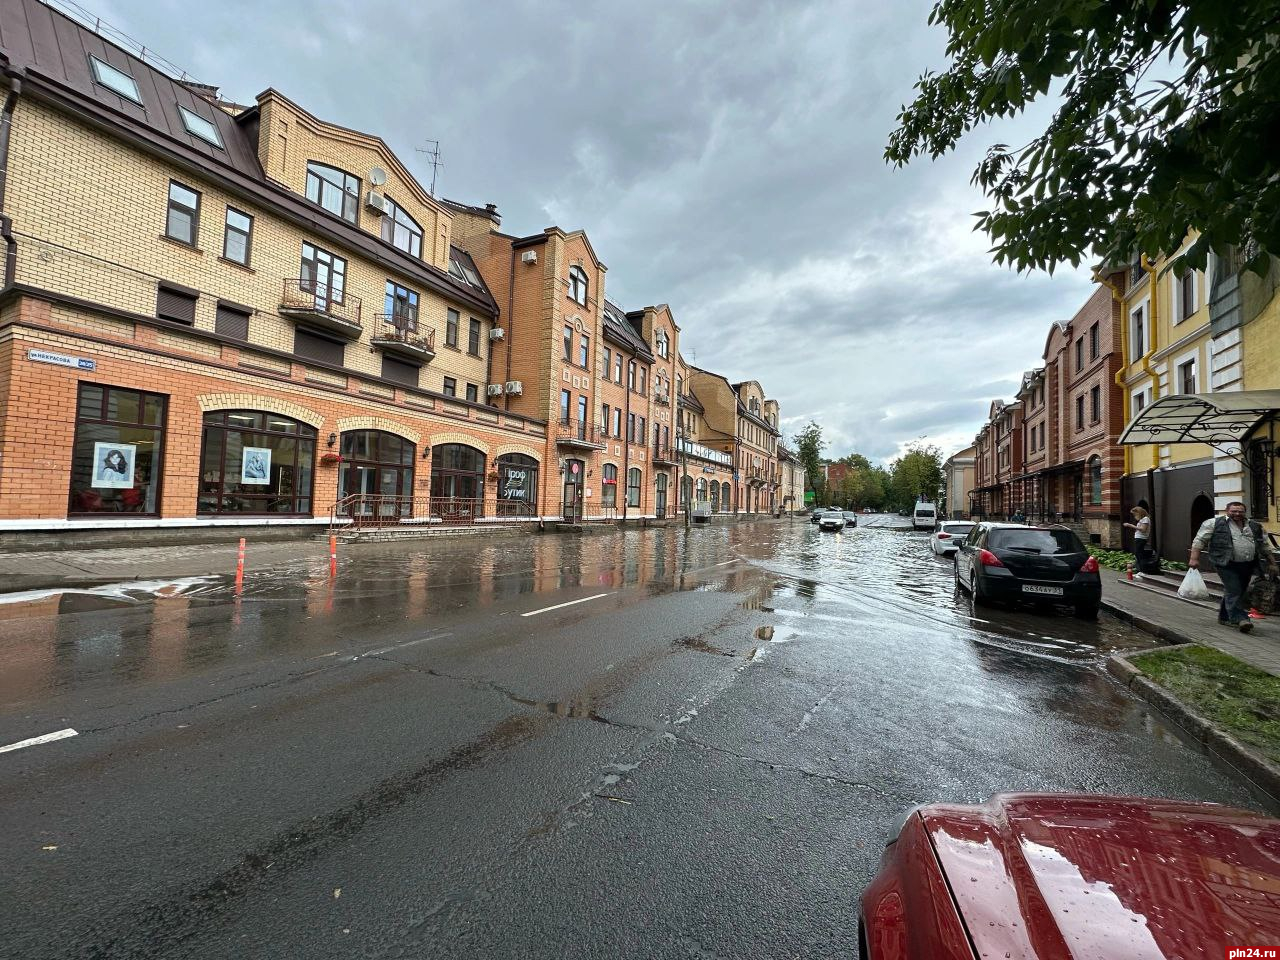 Участок улицы Некрасова затопило после ливня в Пскове